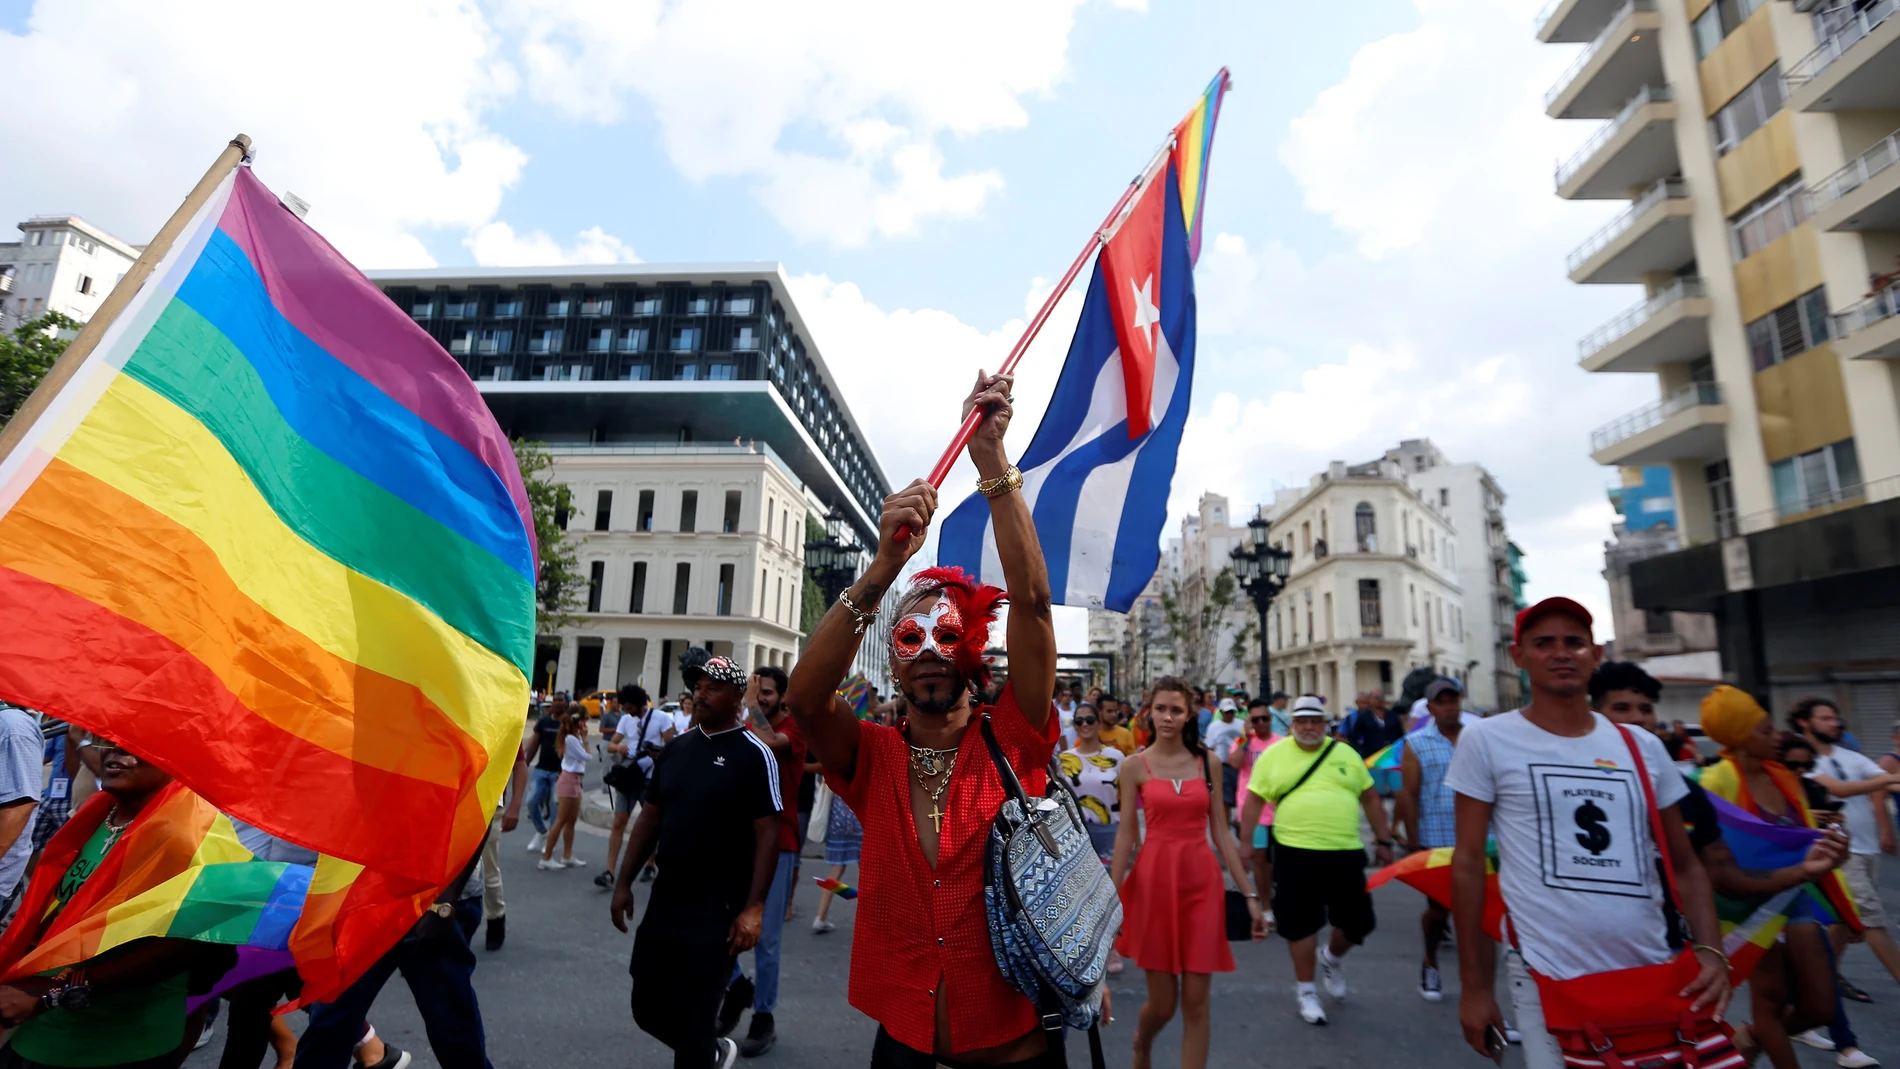 Cuatro detenidos en una manifestación LGBTBI ilegal en Cuba.